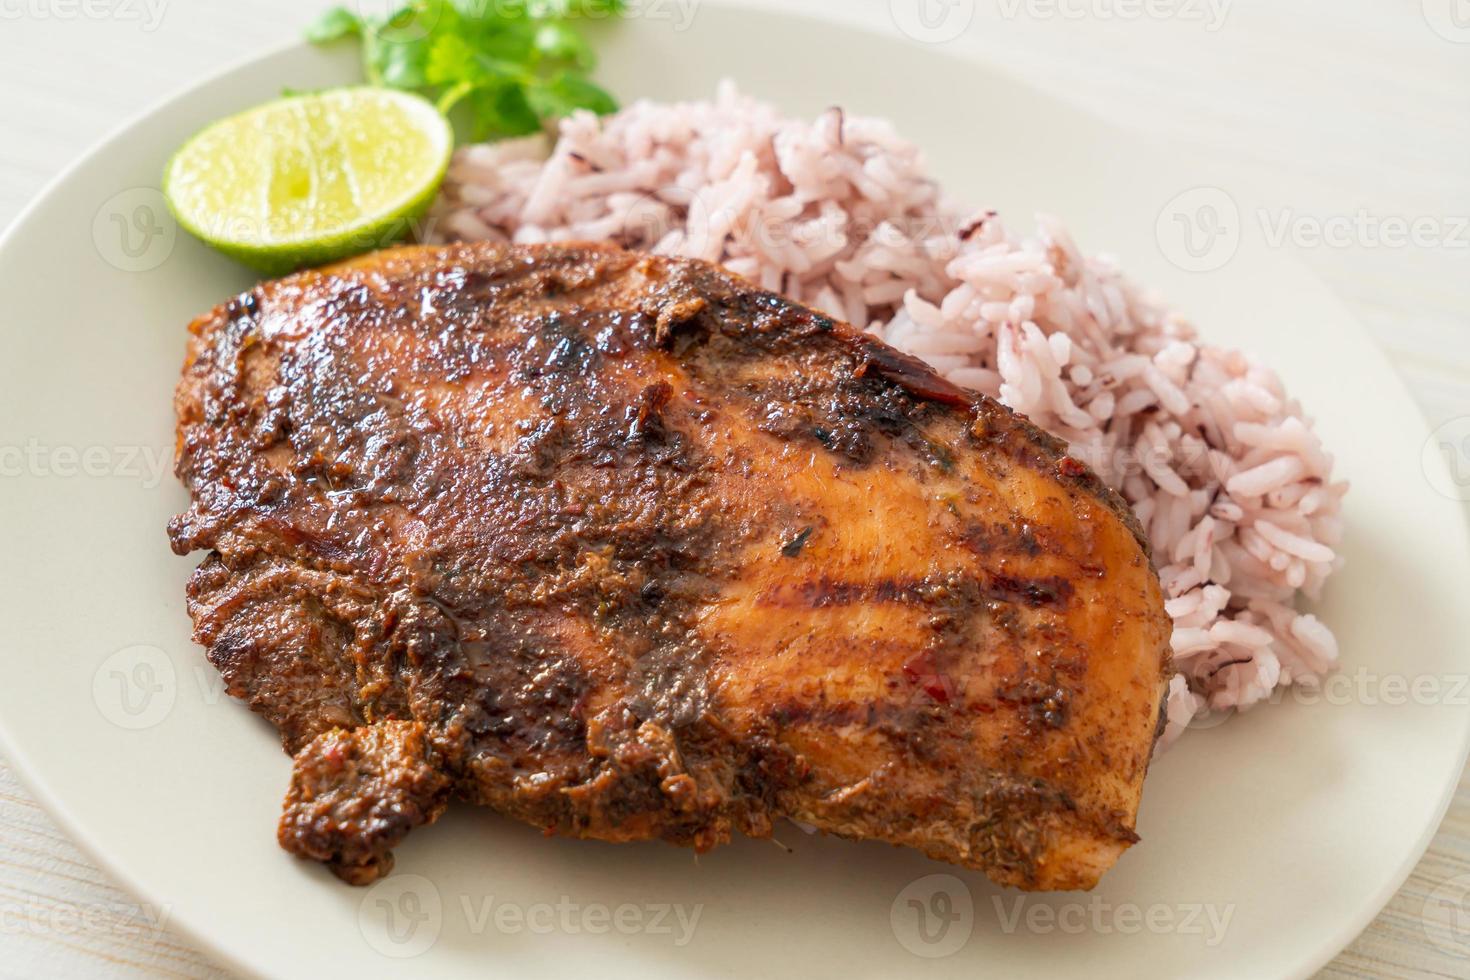 frango jerk jamaicano grelhado picante com arroz - estilo comida jamaicana foto